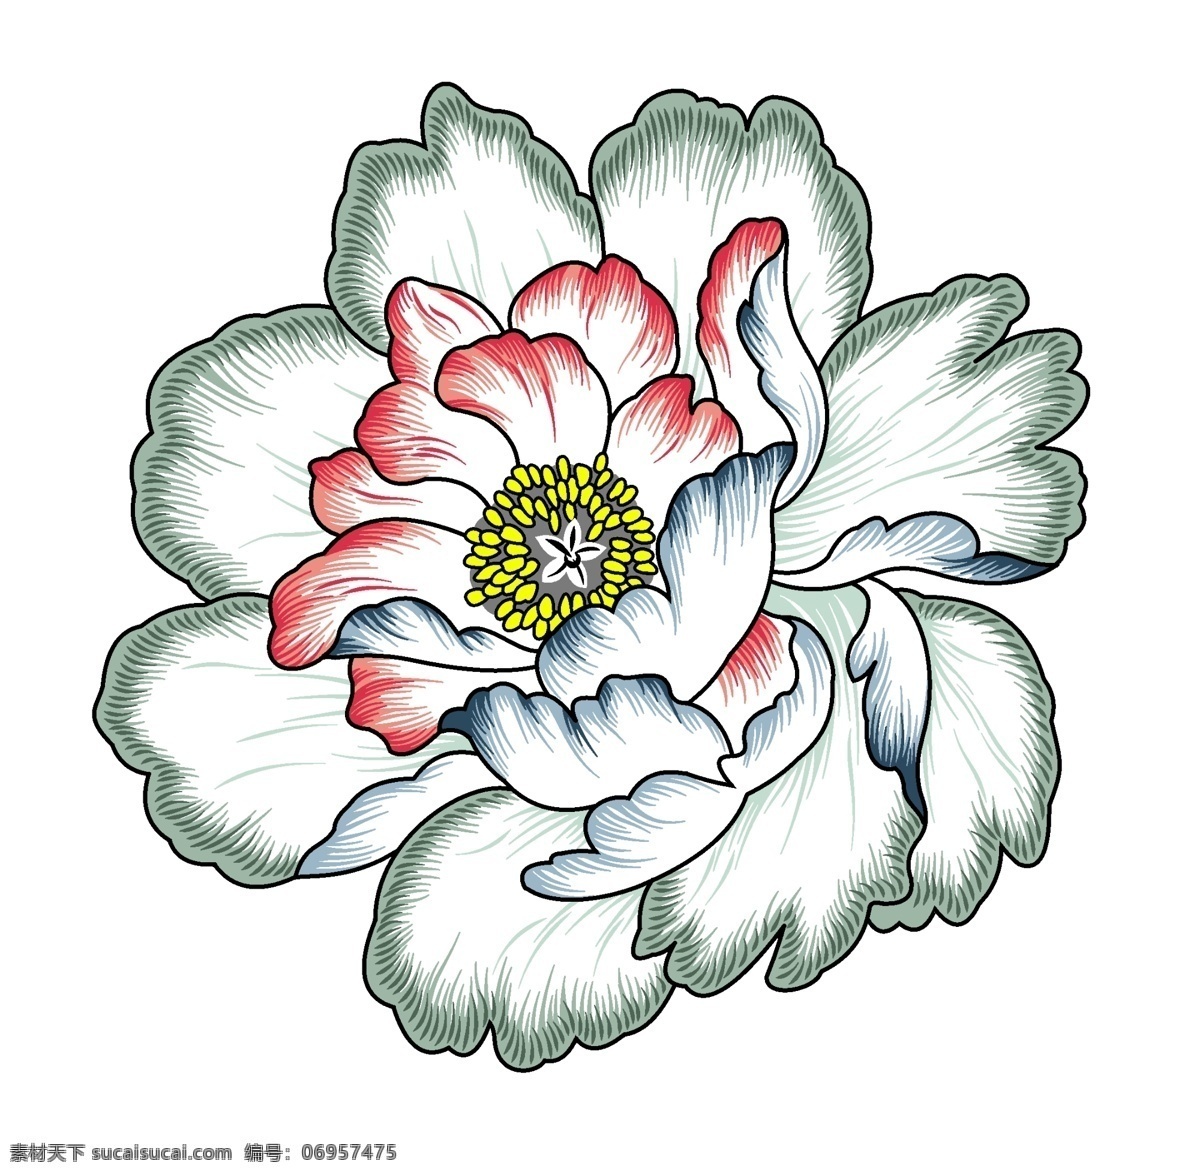 手绘花卉 手绘大花 高清花卉 创意花卉 线条花卉 印花素材 服装图案素材 家纺图案素材 花卉